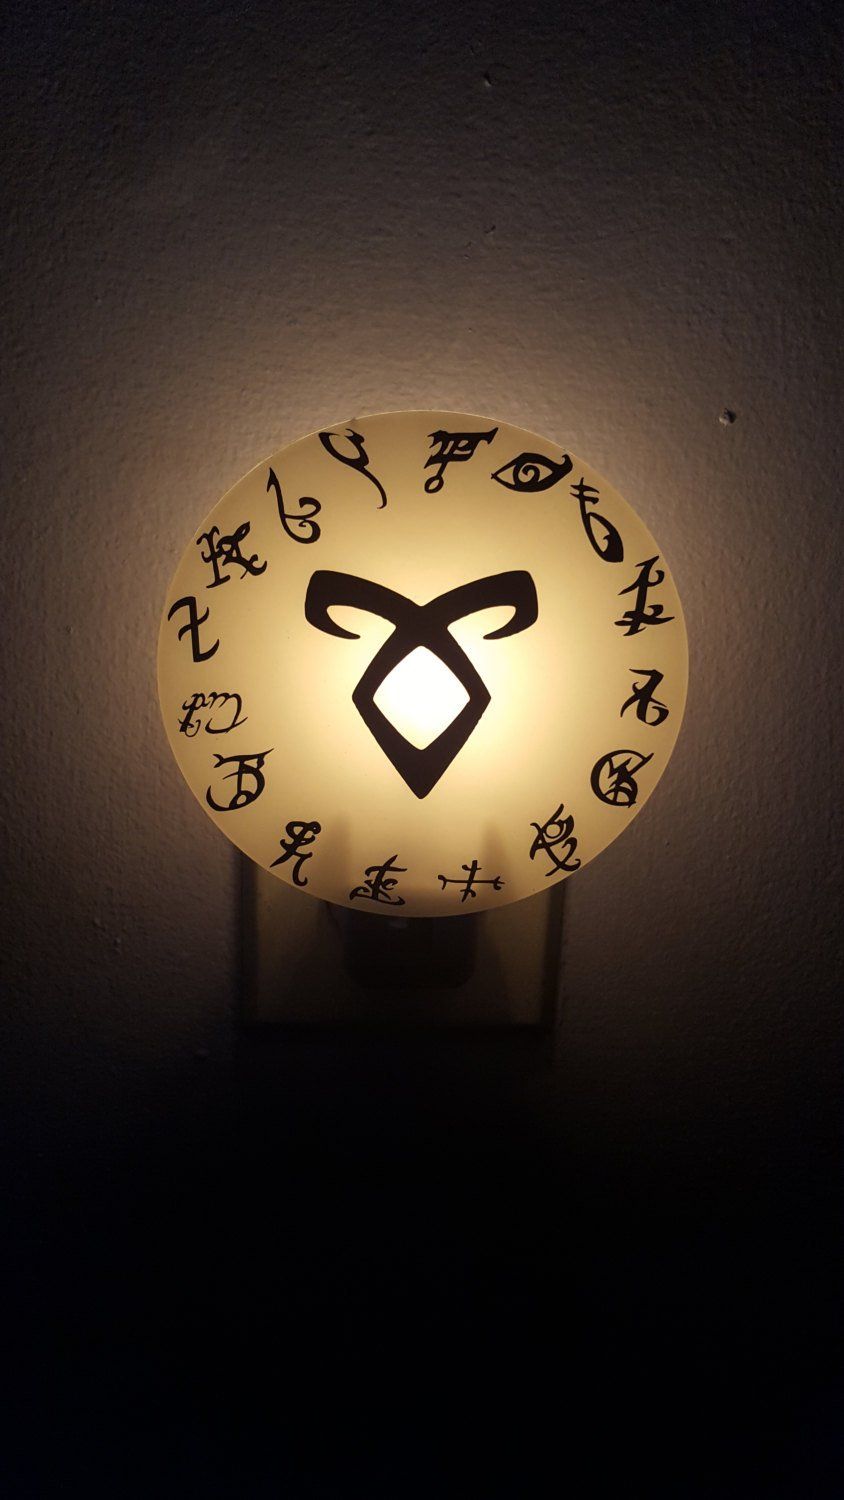 Shadowhunter Runes Mortal Instruments Inspired Night Light City